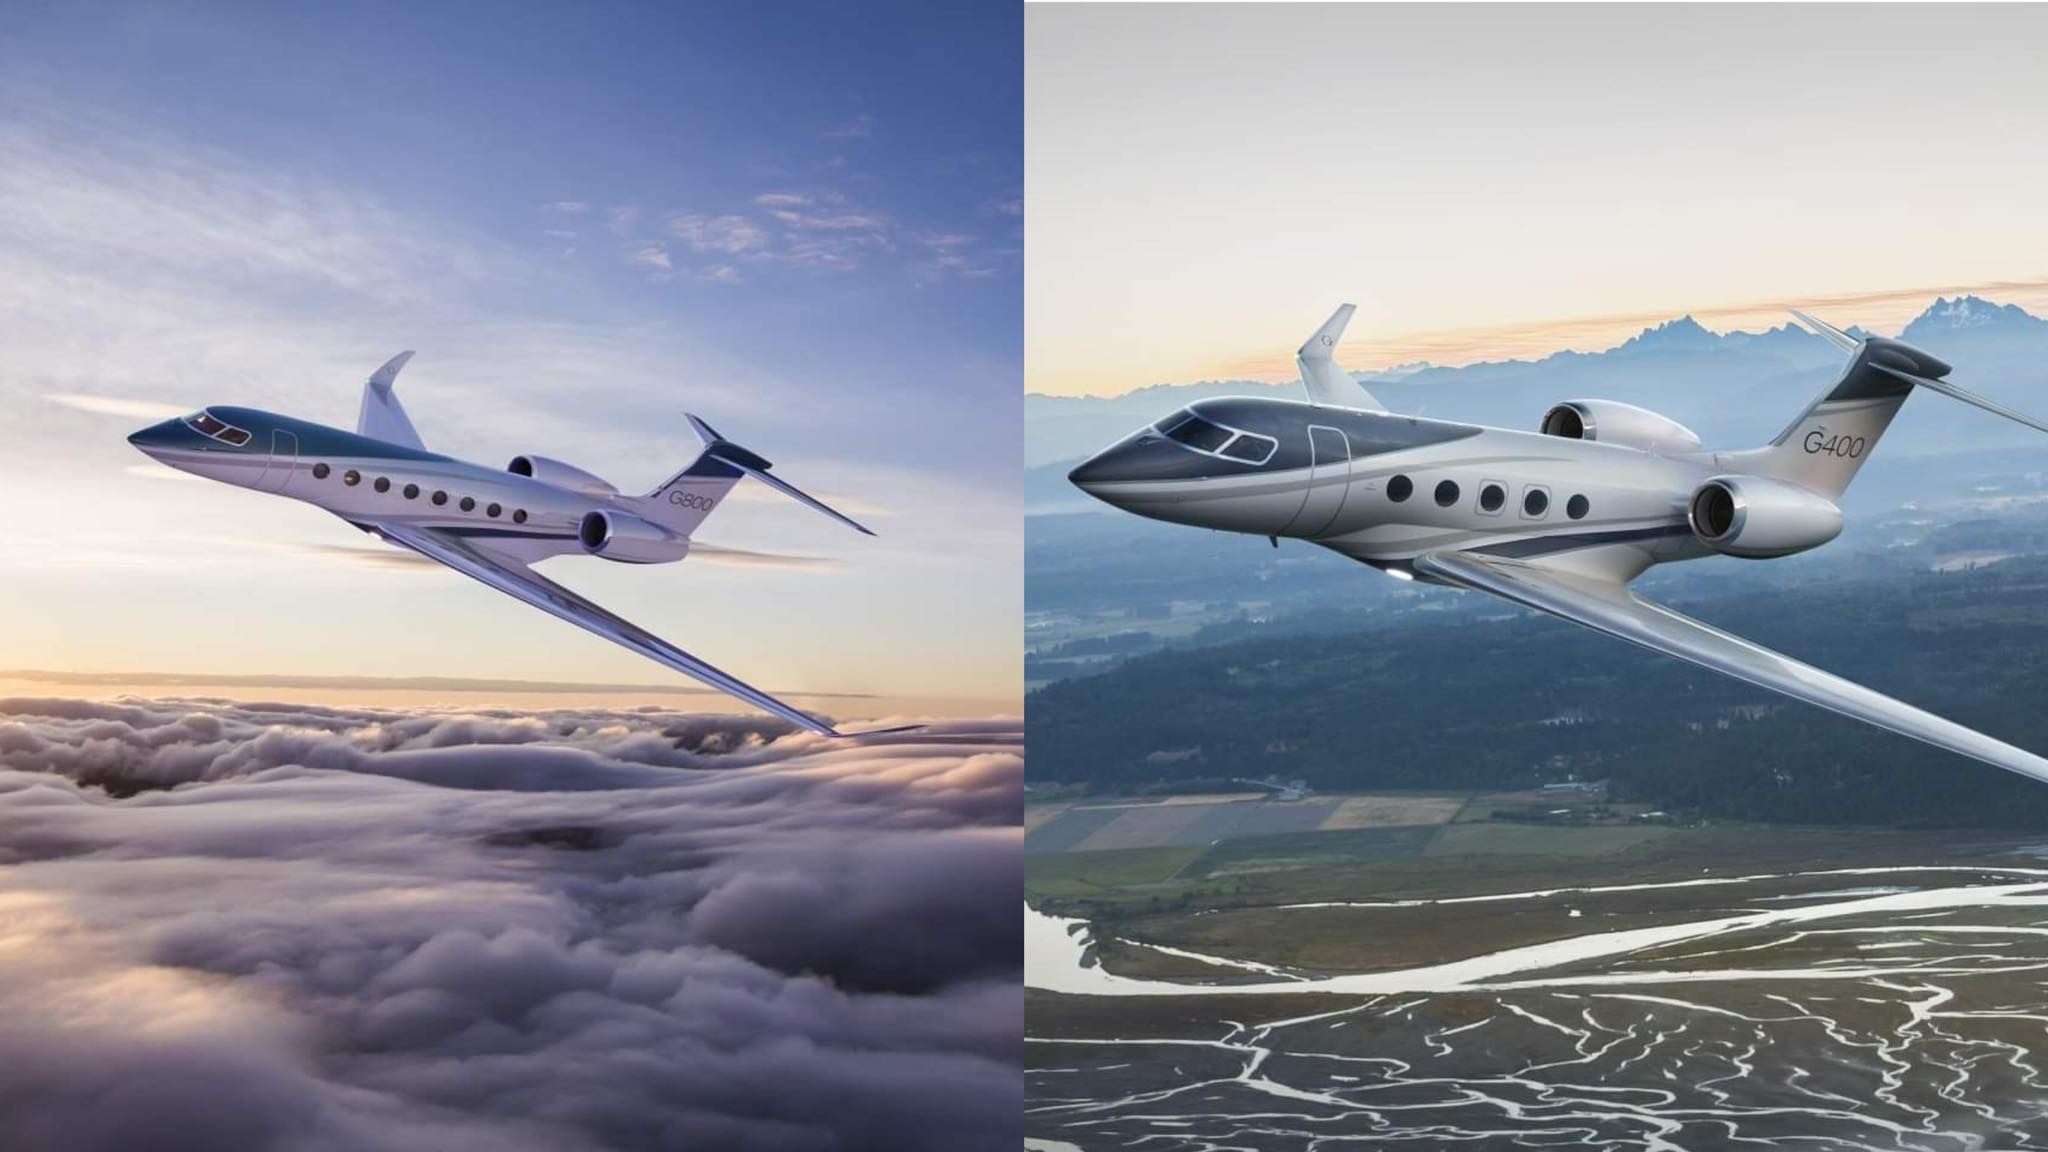 Компания Gulfstream представила бизнес-джеты G400 и G800 - Инновации